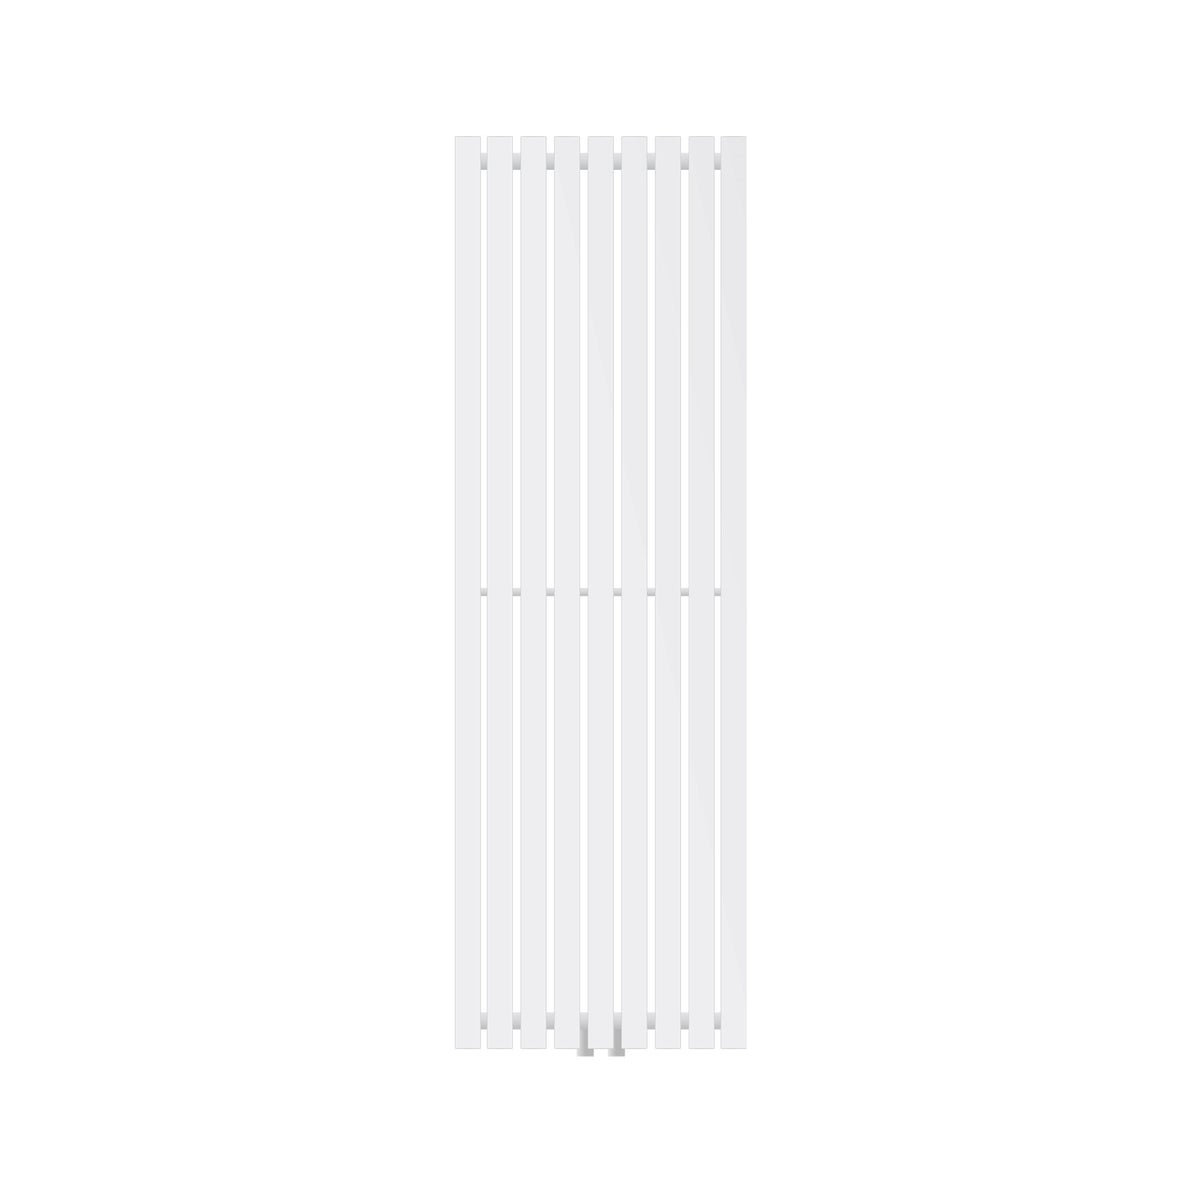 LuxeBath Designheizkörper Stella 1400 x 480 mm, Weiß, Paneelheizkörper mit Mittelanschluss, Einlagig, Flach, Vertikal, Badheizkörper Röhrenheizkörper Flachheizkörper Badezimmer Heizung Bad Wandheizung